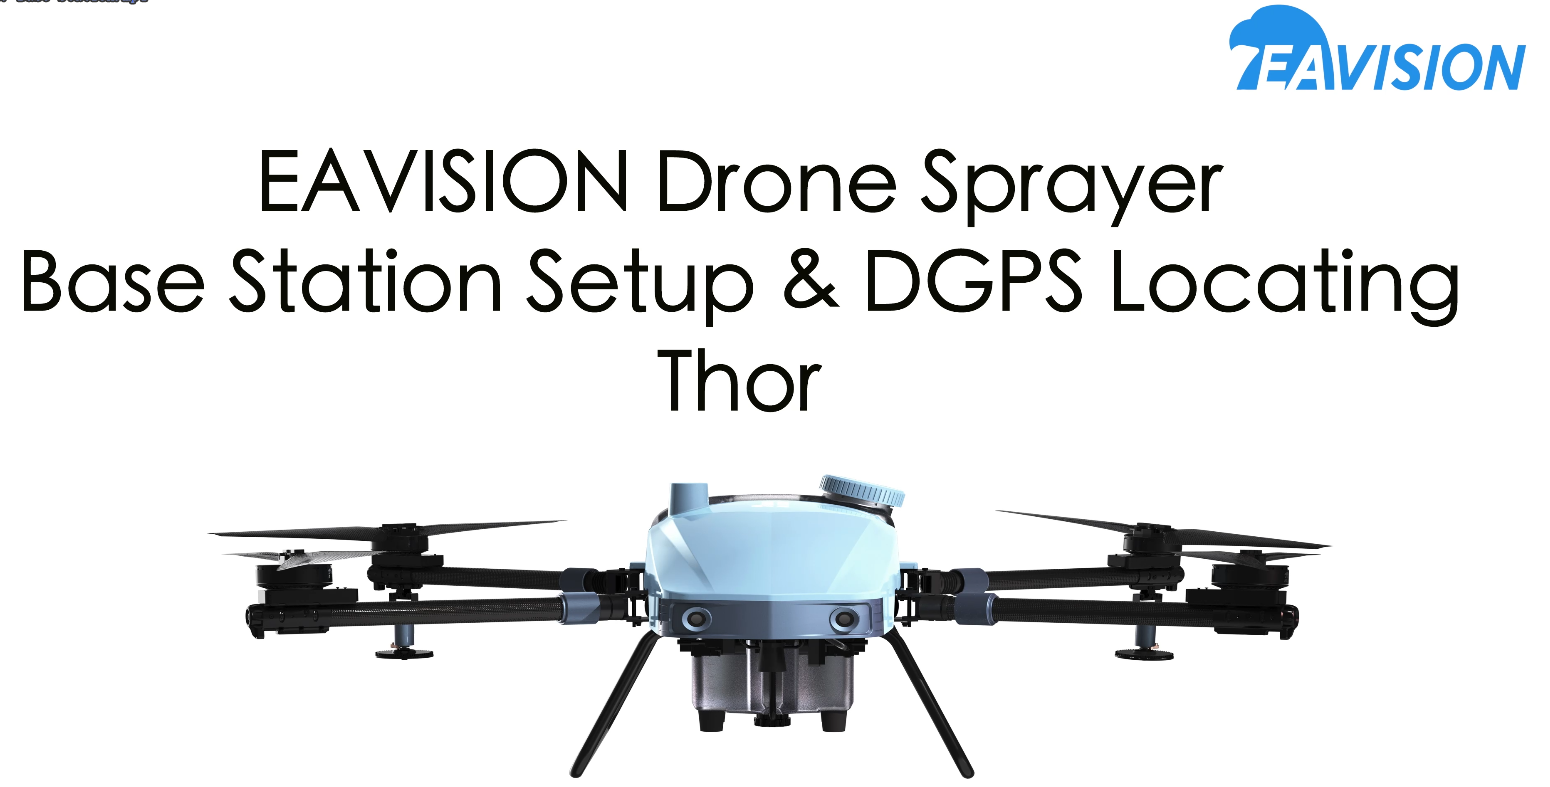 EAVISION - настройка базовой станции Thor и определение местоположения DGPS
